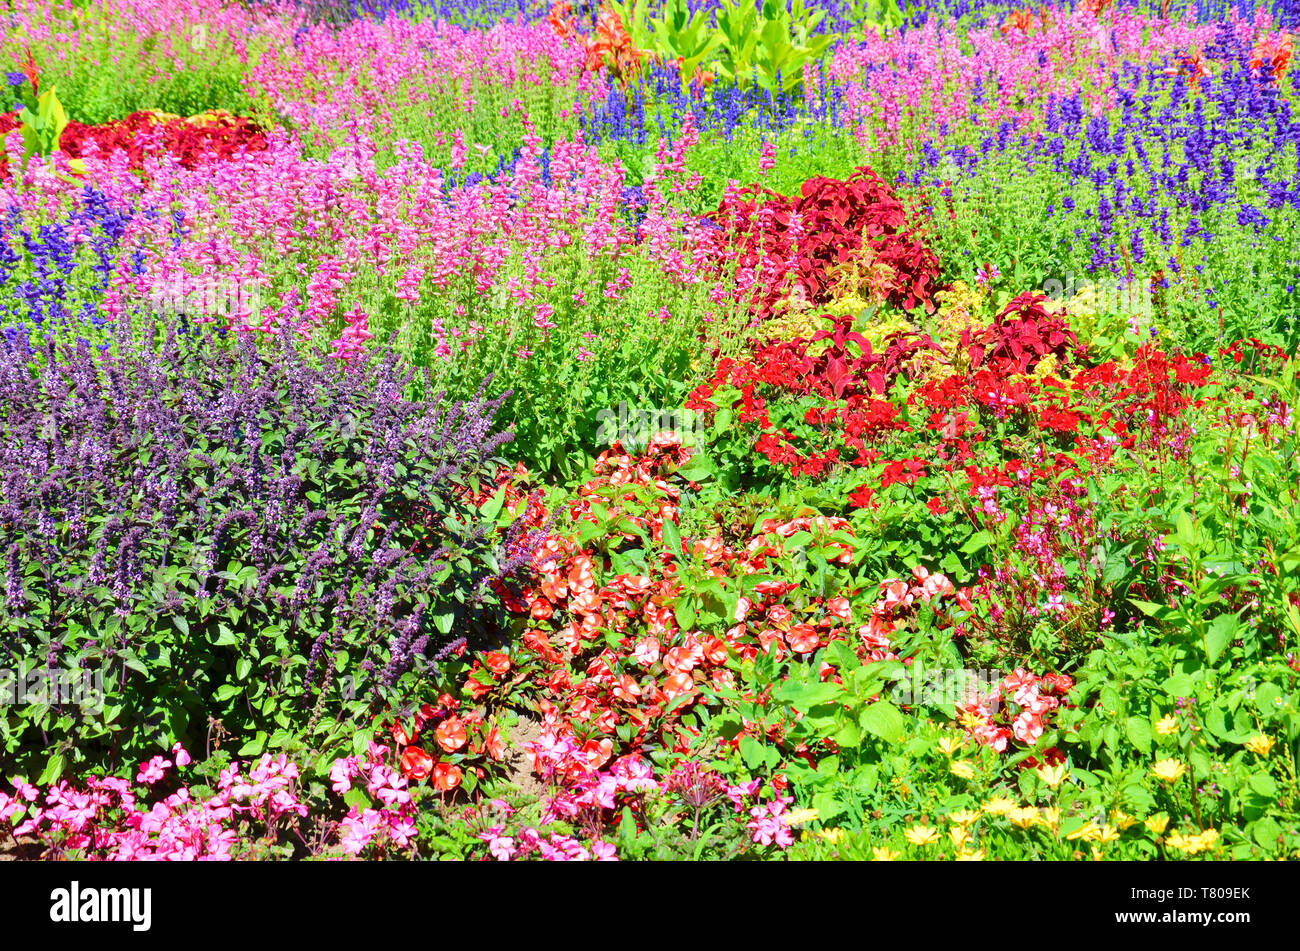 Tolles Bett mit Blumen mit vielen verschiedenen Arten von schönen blühenden Blumen. Die blätter Farben sind pink, rot, violett oder gelb. Die hellen Fotografie wurde im Frühjahr Saison übernommen. Stockfoto